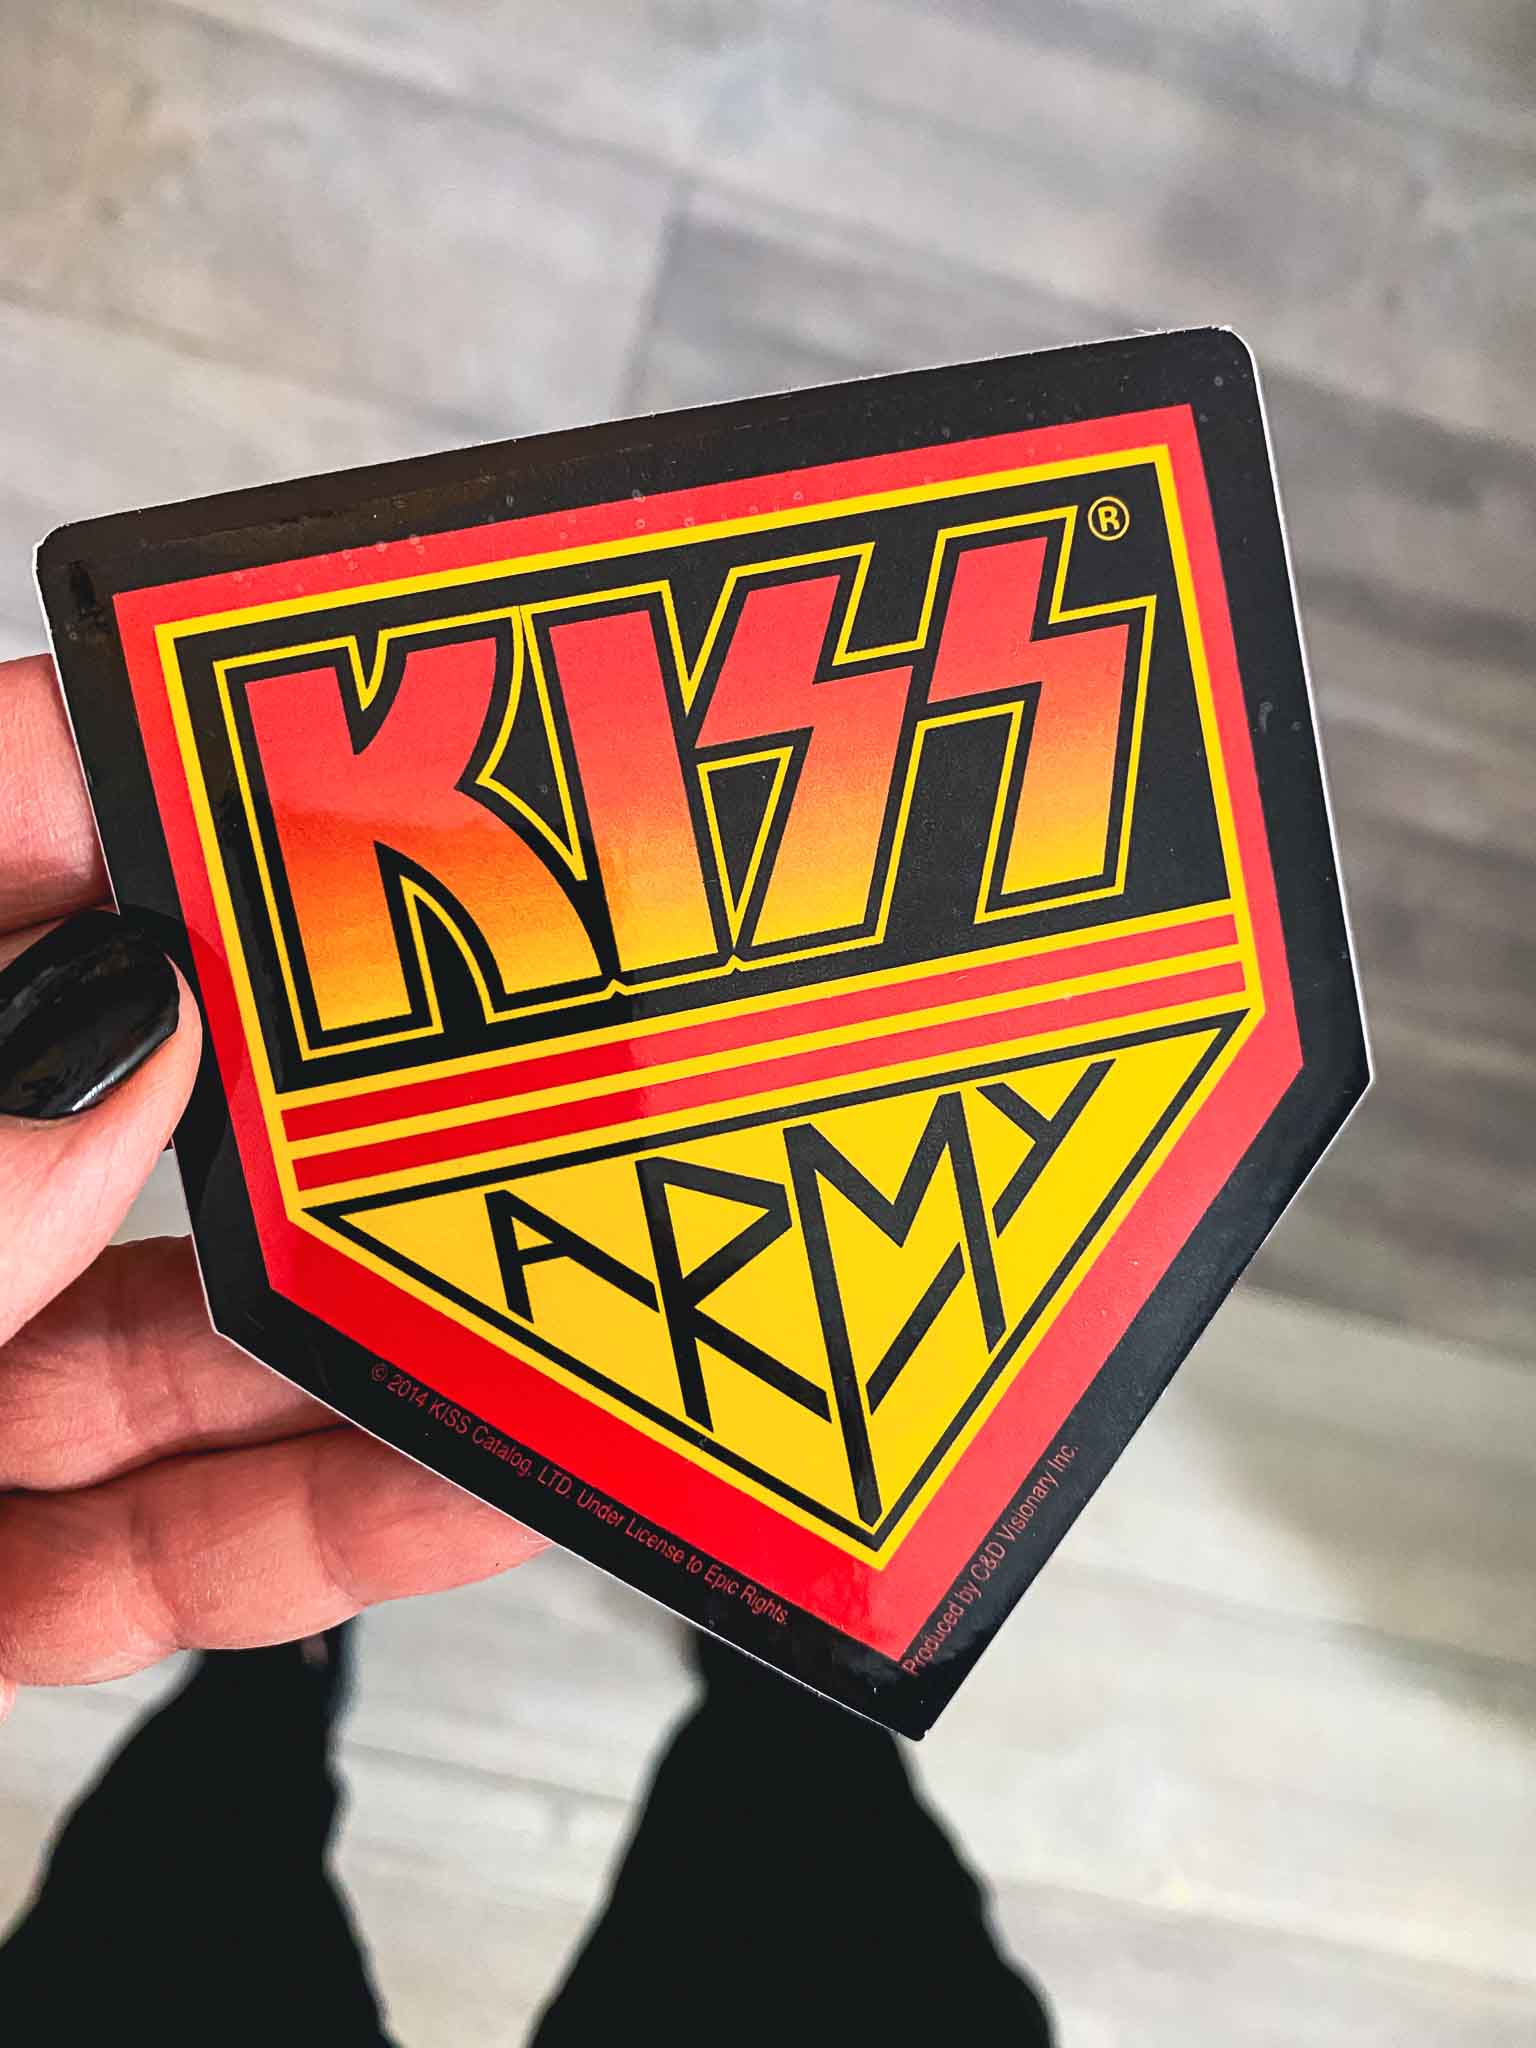 Kiss Army Sticker